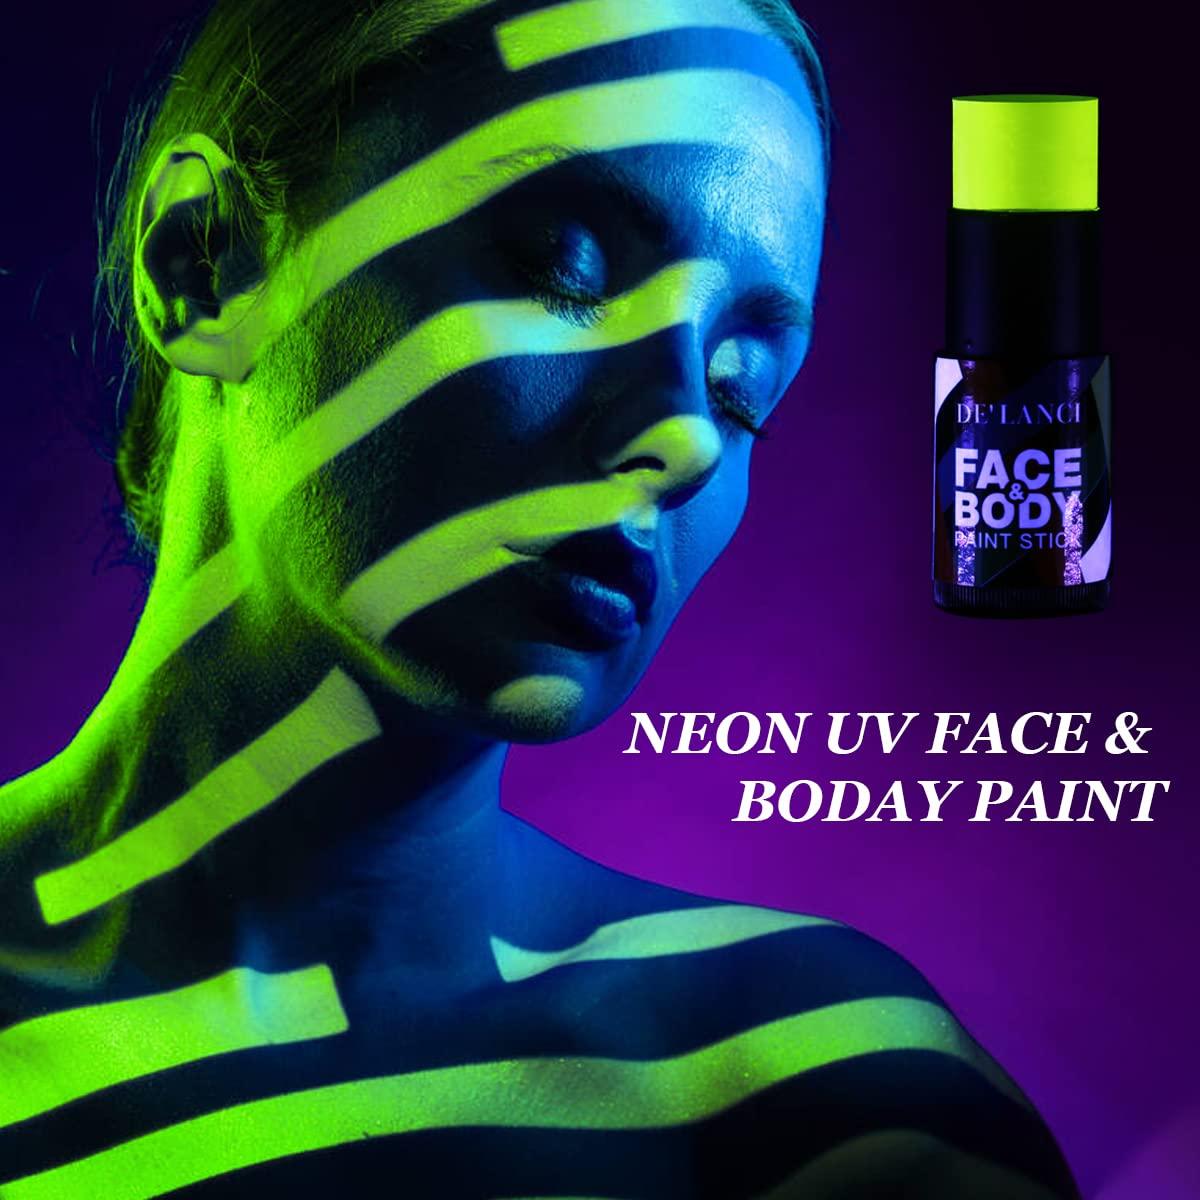 DE'LANCI Neon Yellow Face Paint Stick Cream Blendable Body Paint